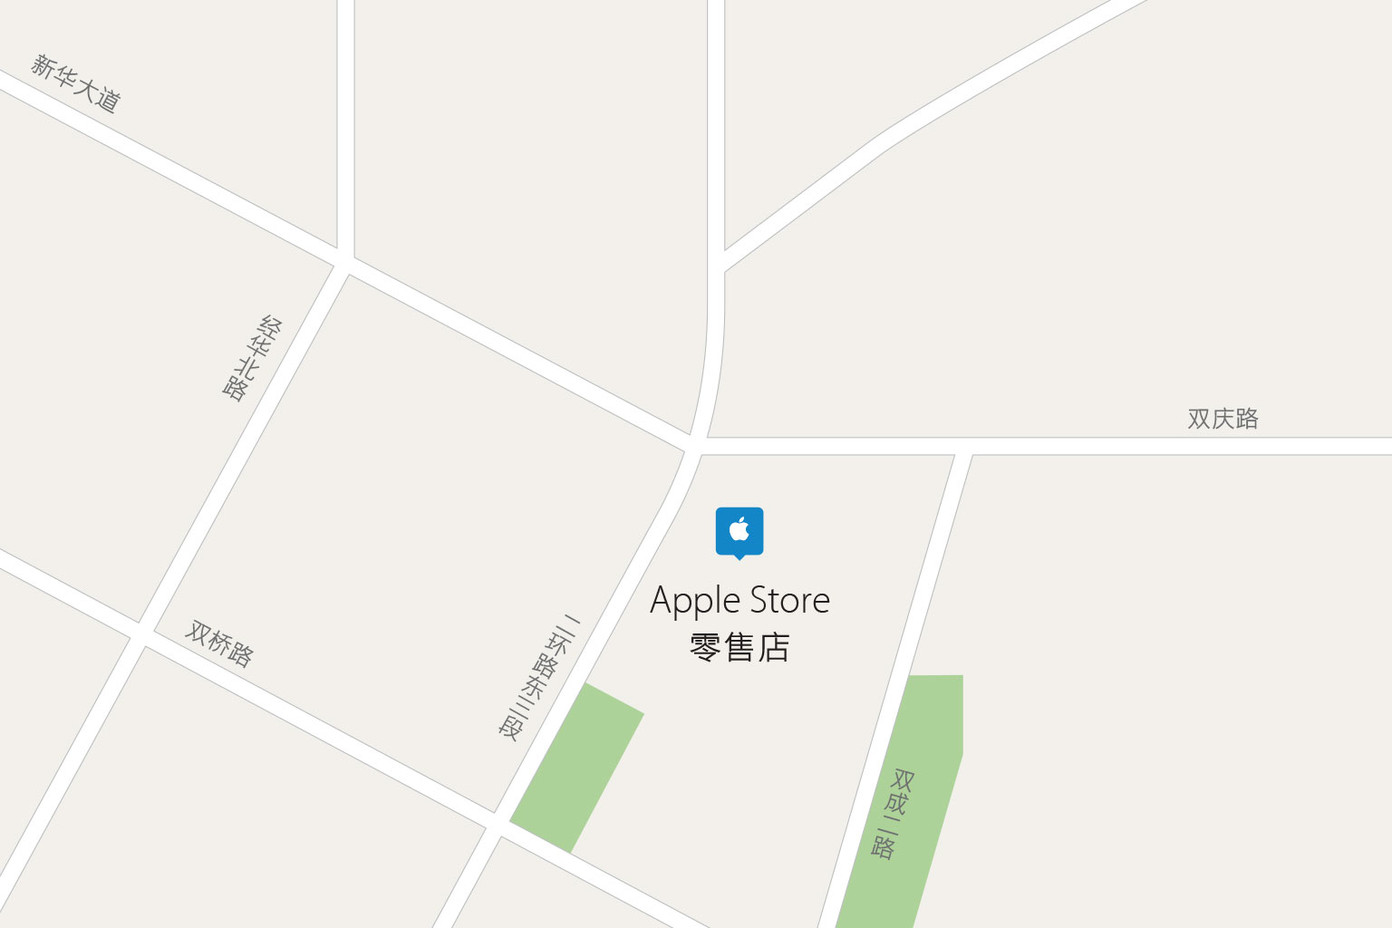 成都万象城 Apple Store 零售店